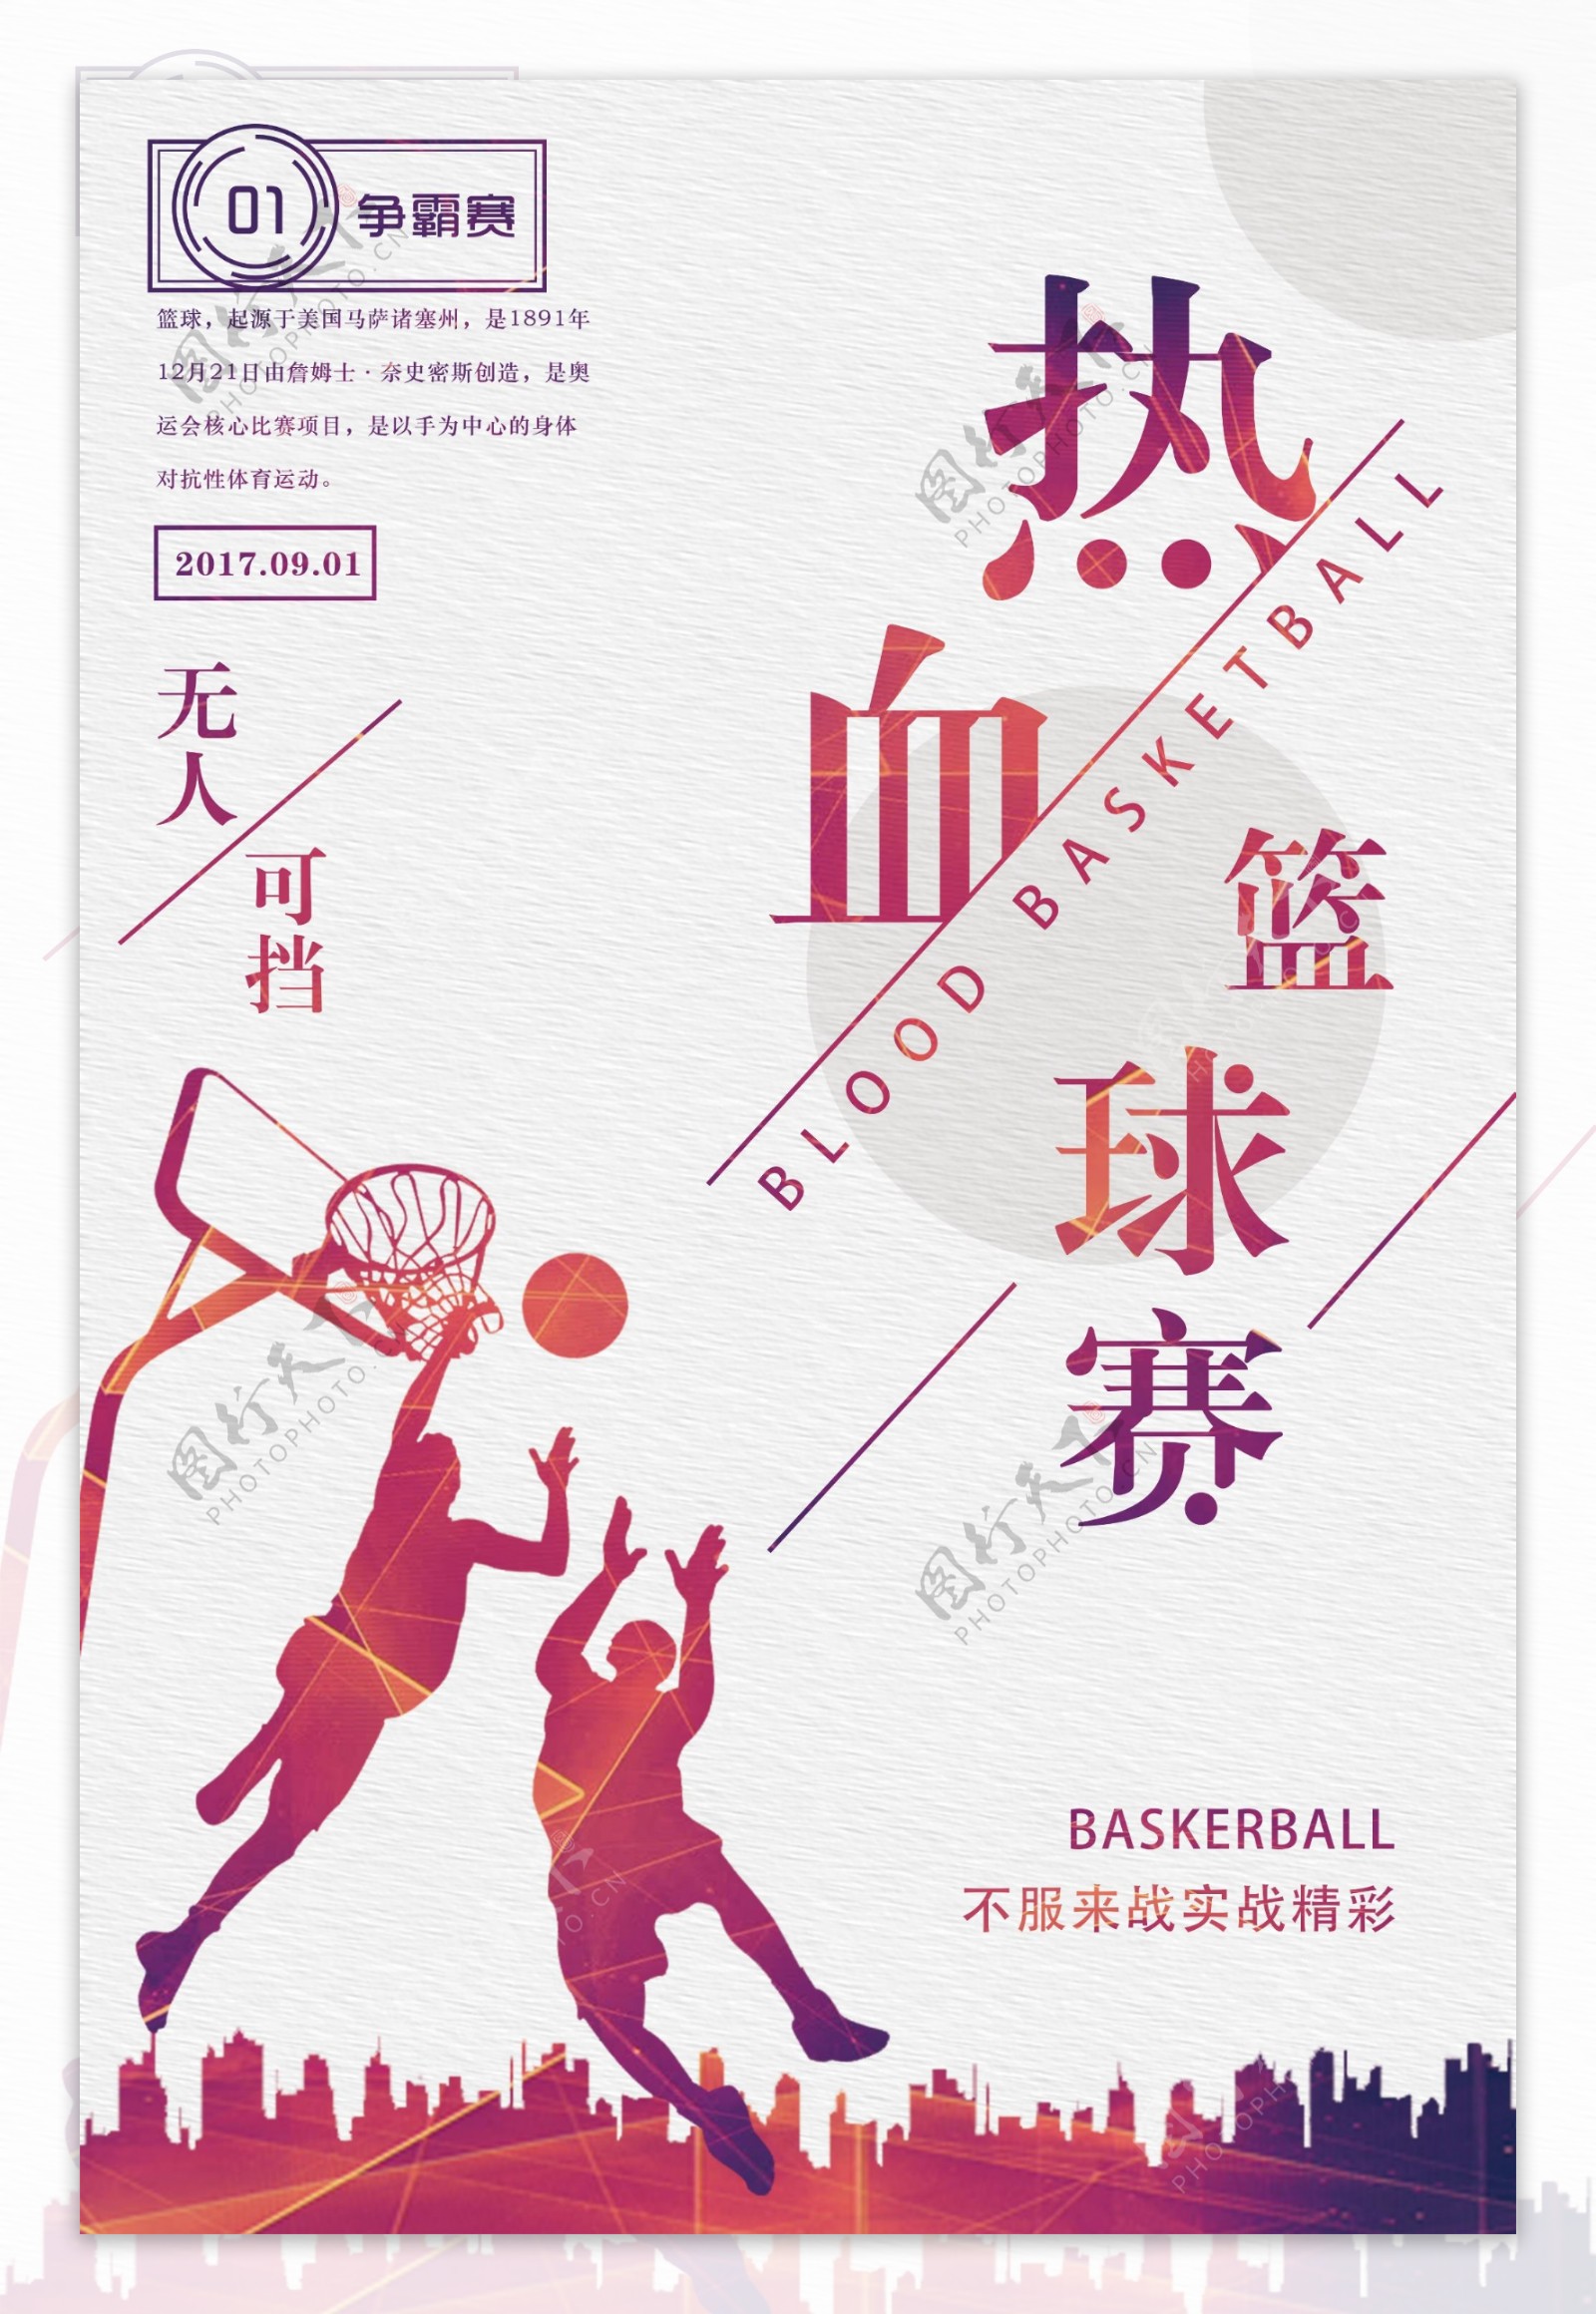 水财富热血篮球赛宣传海报